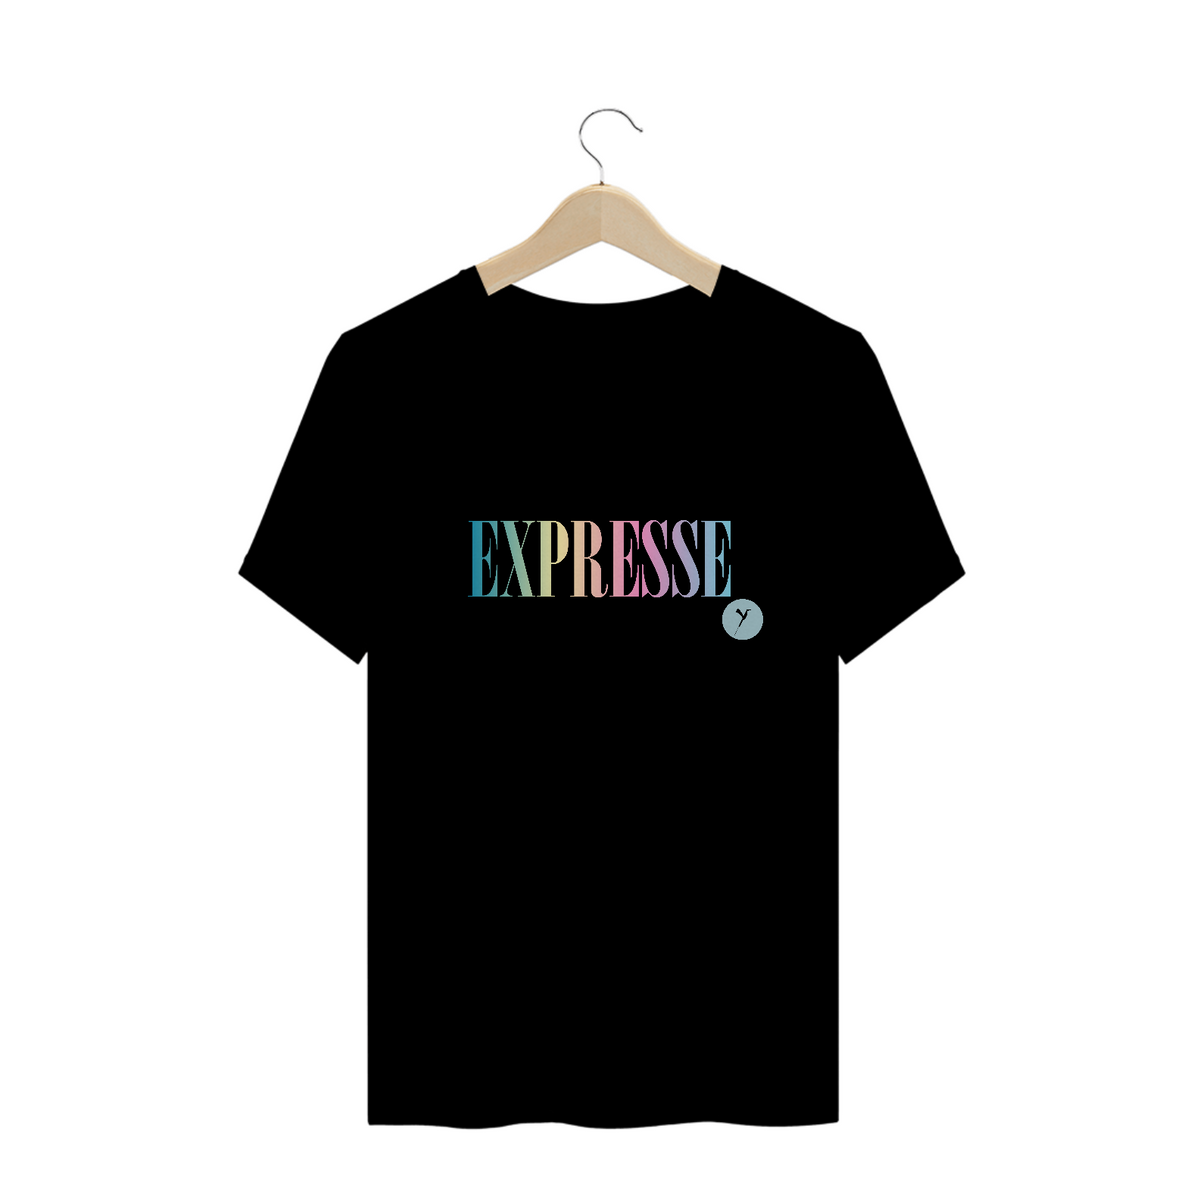 Nome do produto: Camiseta Expresse